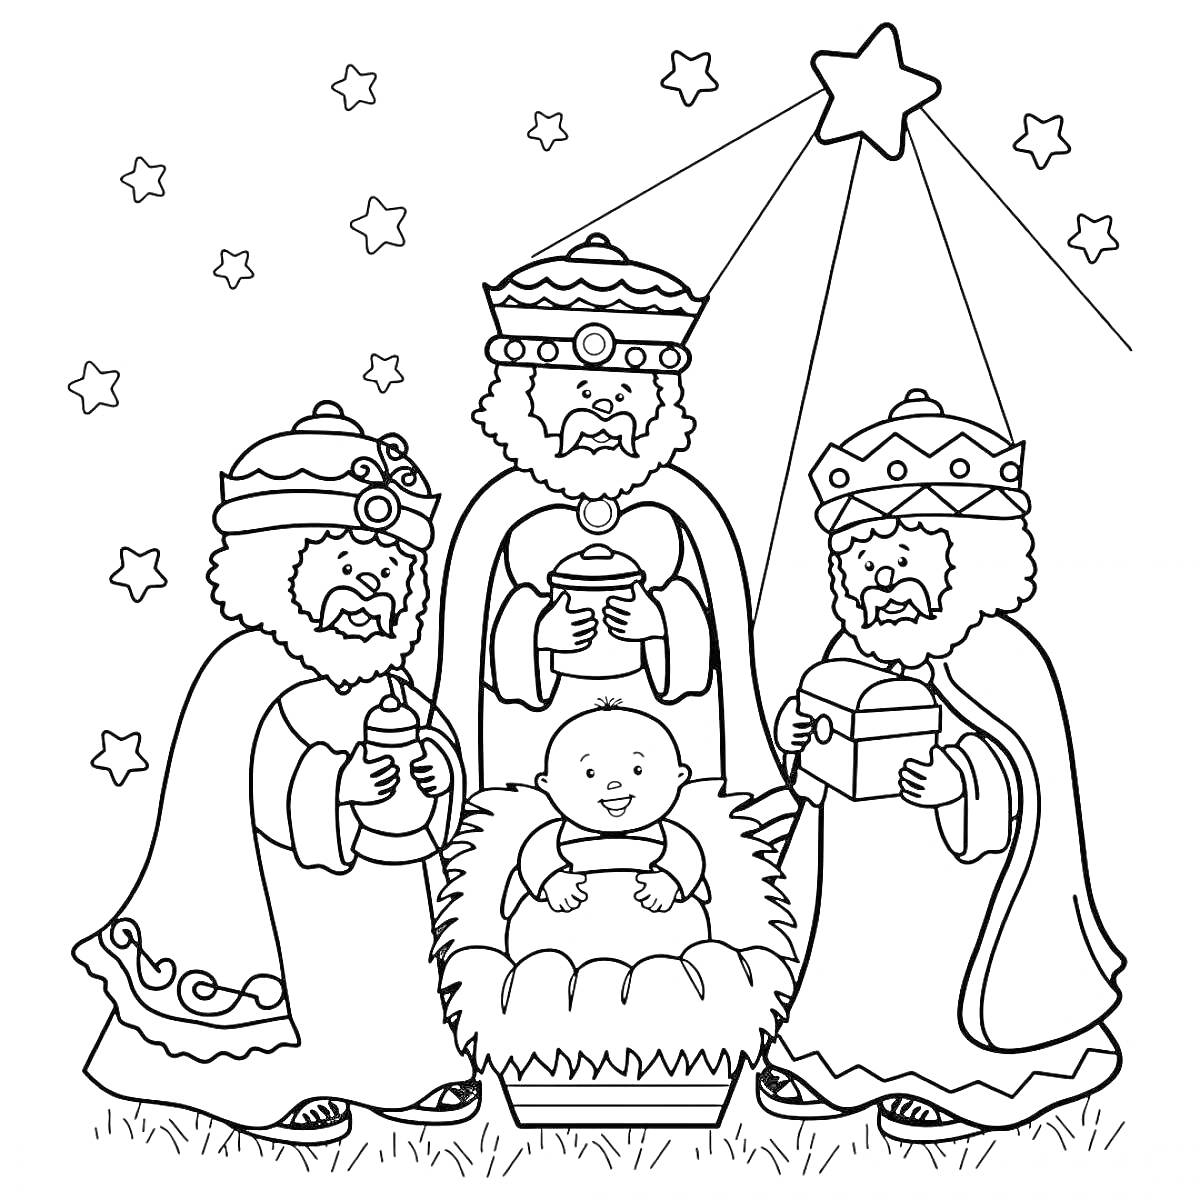 Раскраска волхвы с подарками перед младенцем Иисусом под сияющей звездой, фон с маленькими звездами